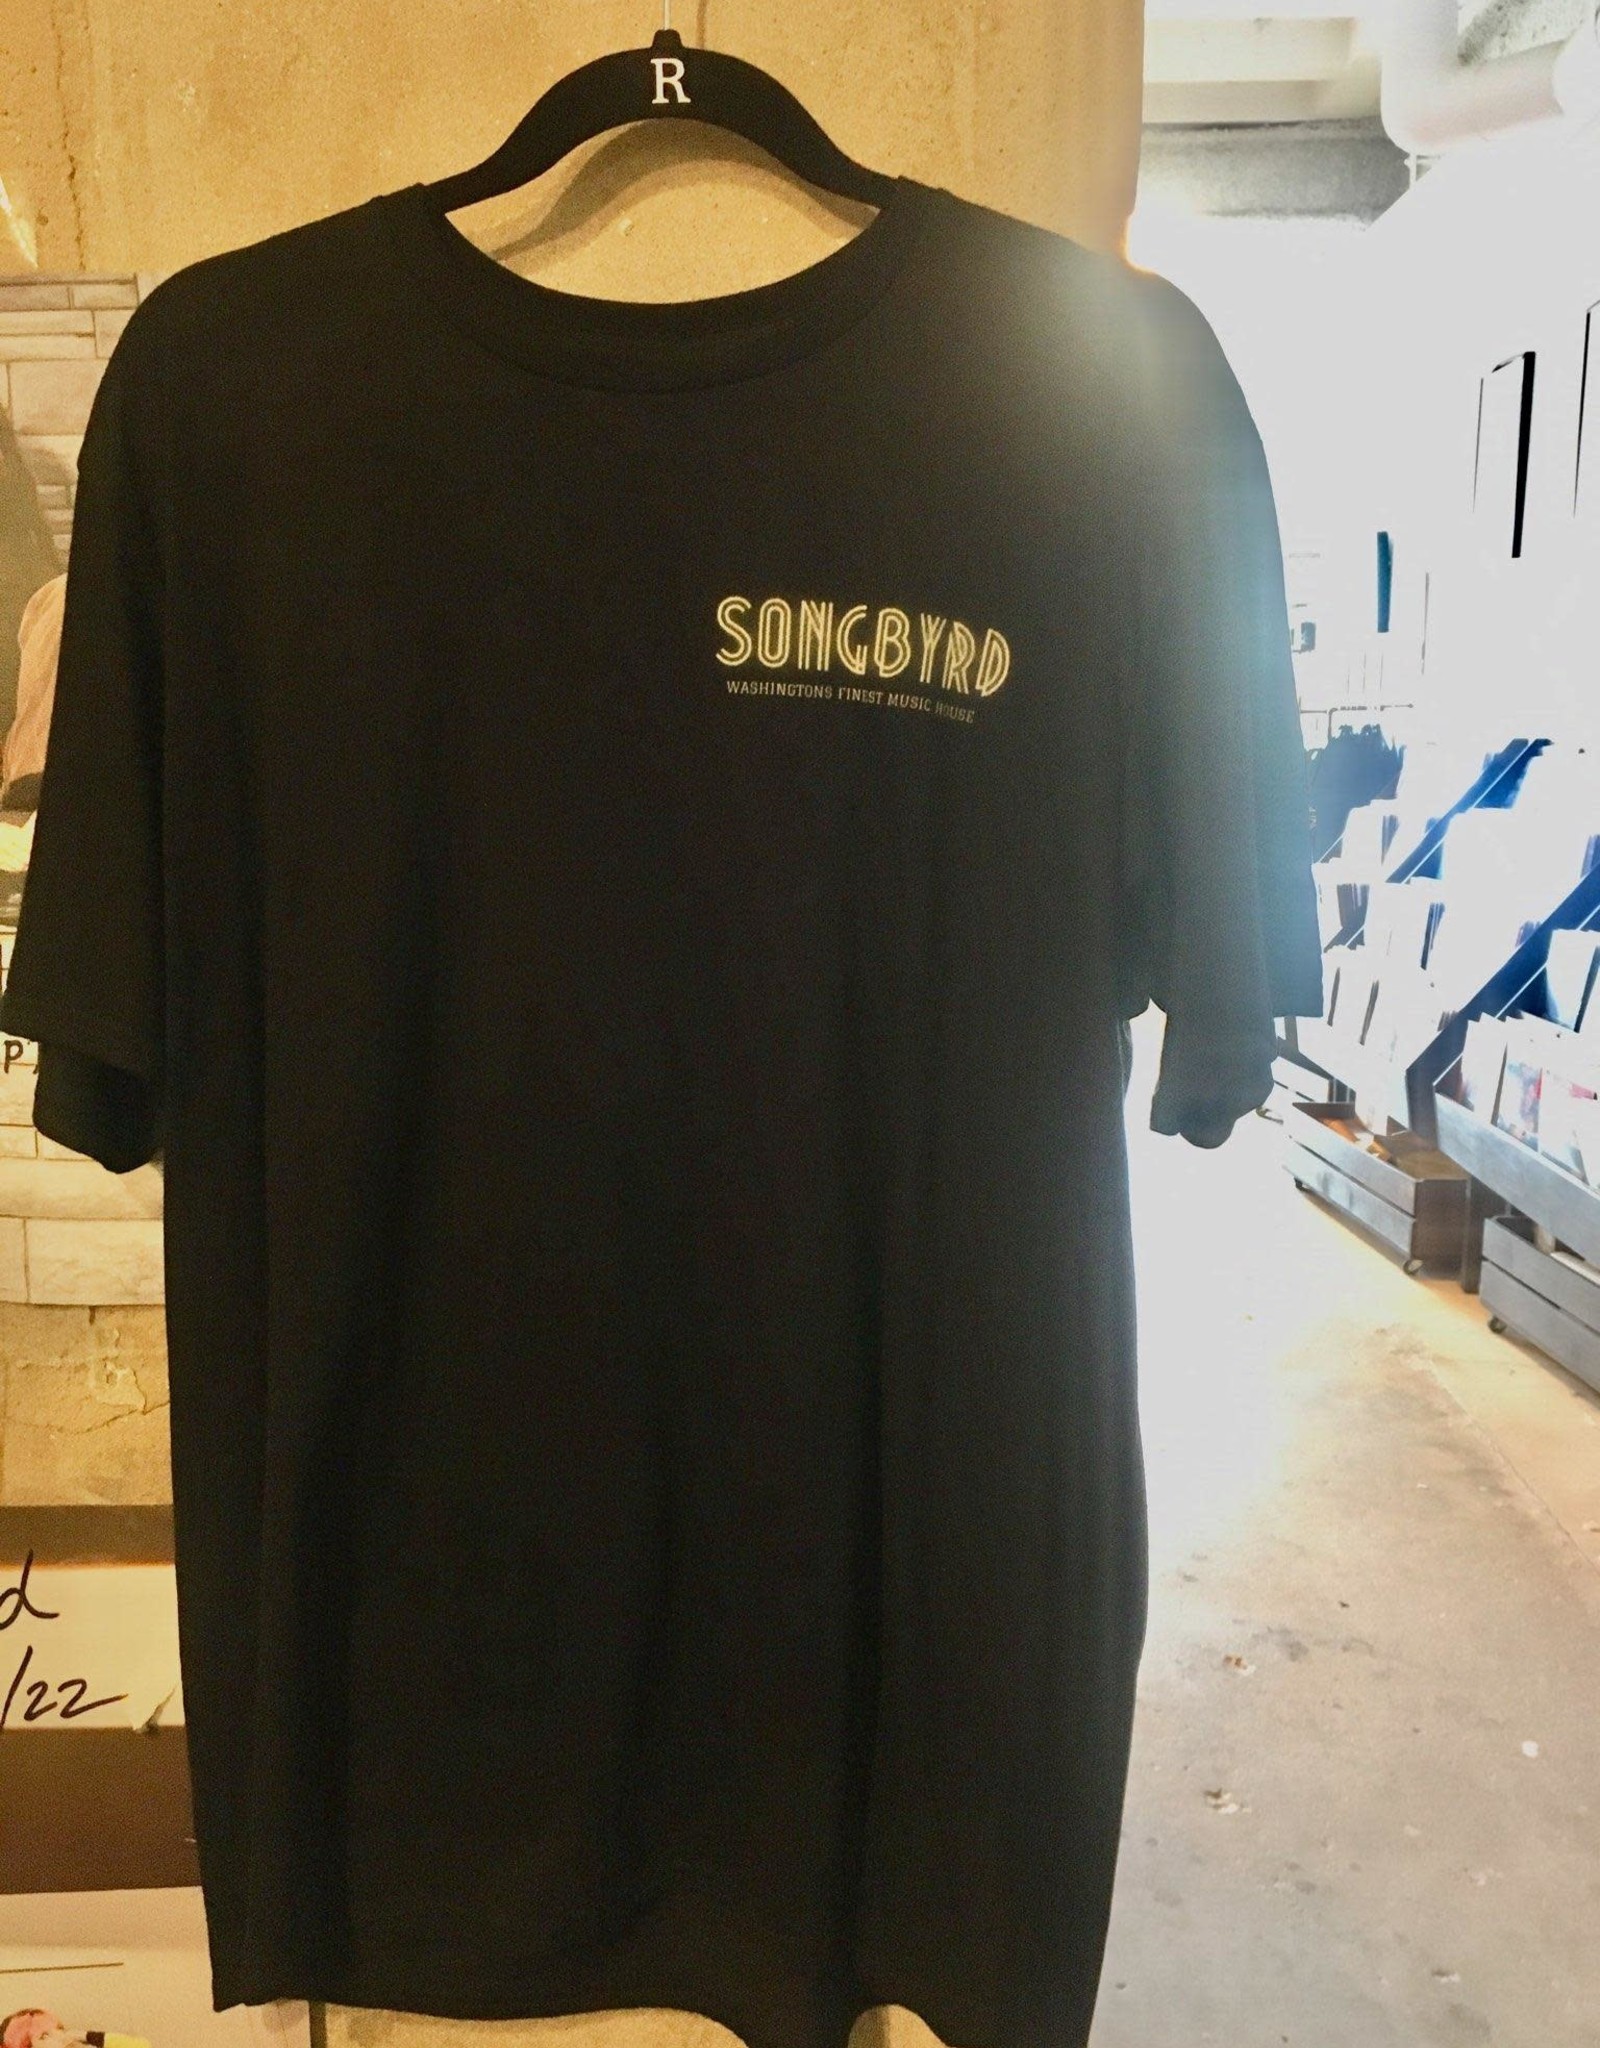 Songbyrd T shirt